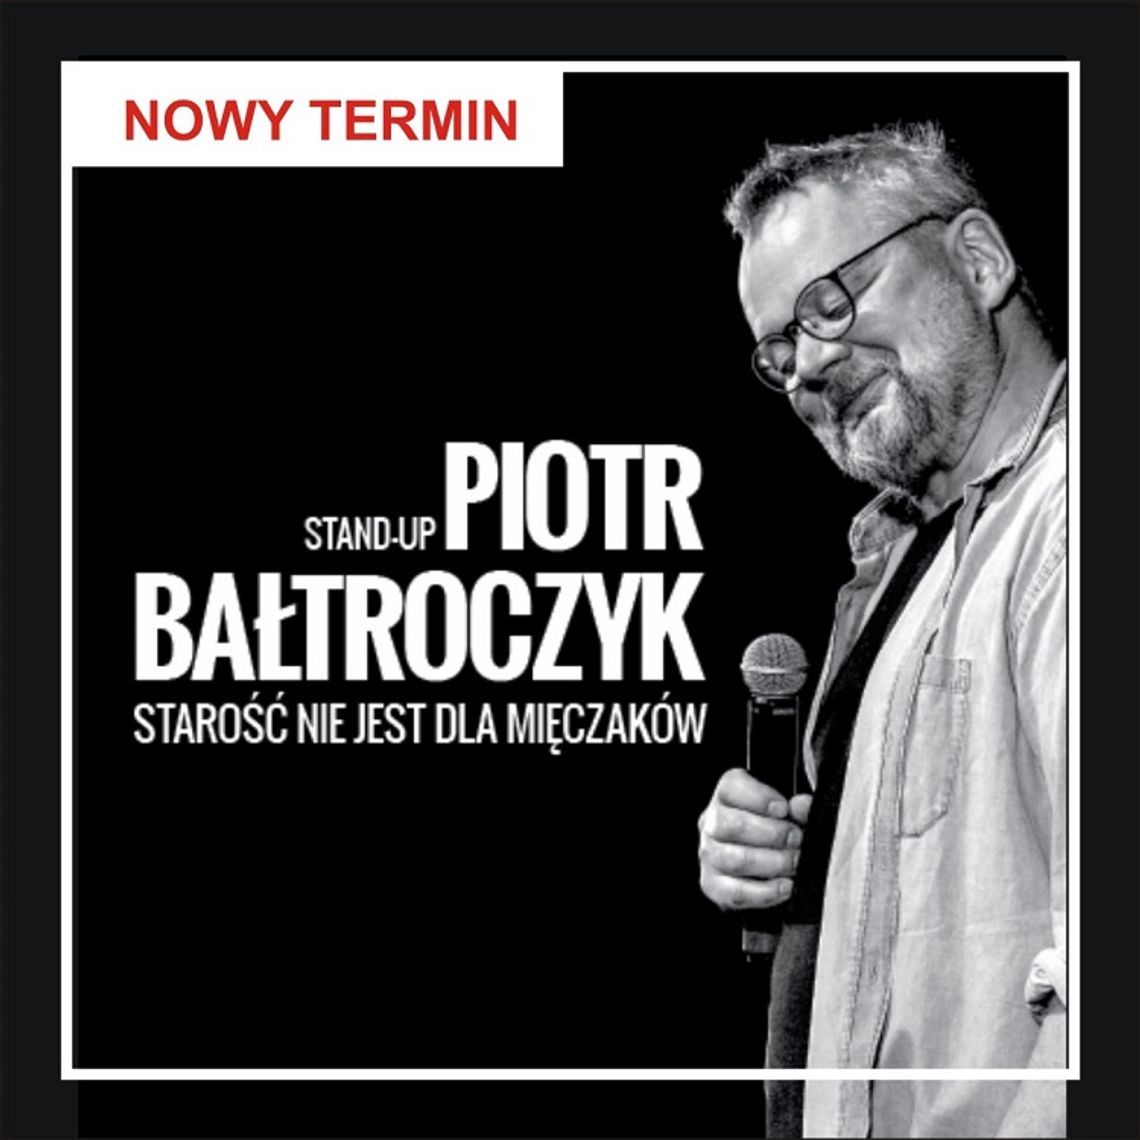 Stand up Piotra Bałtroczyka - NOWY TERMIN.